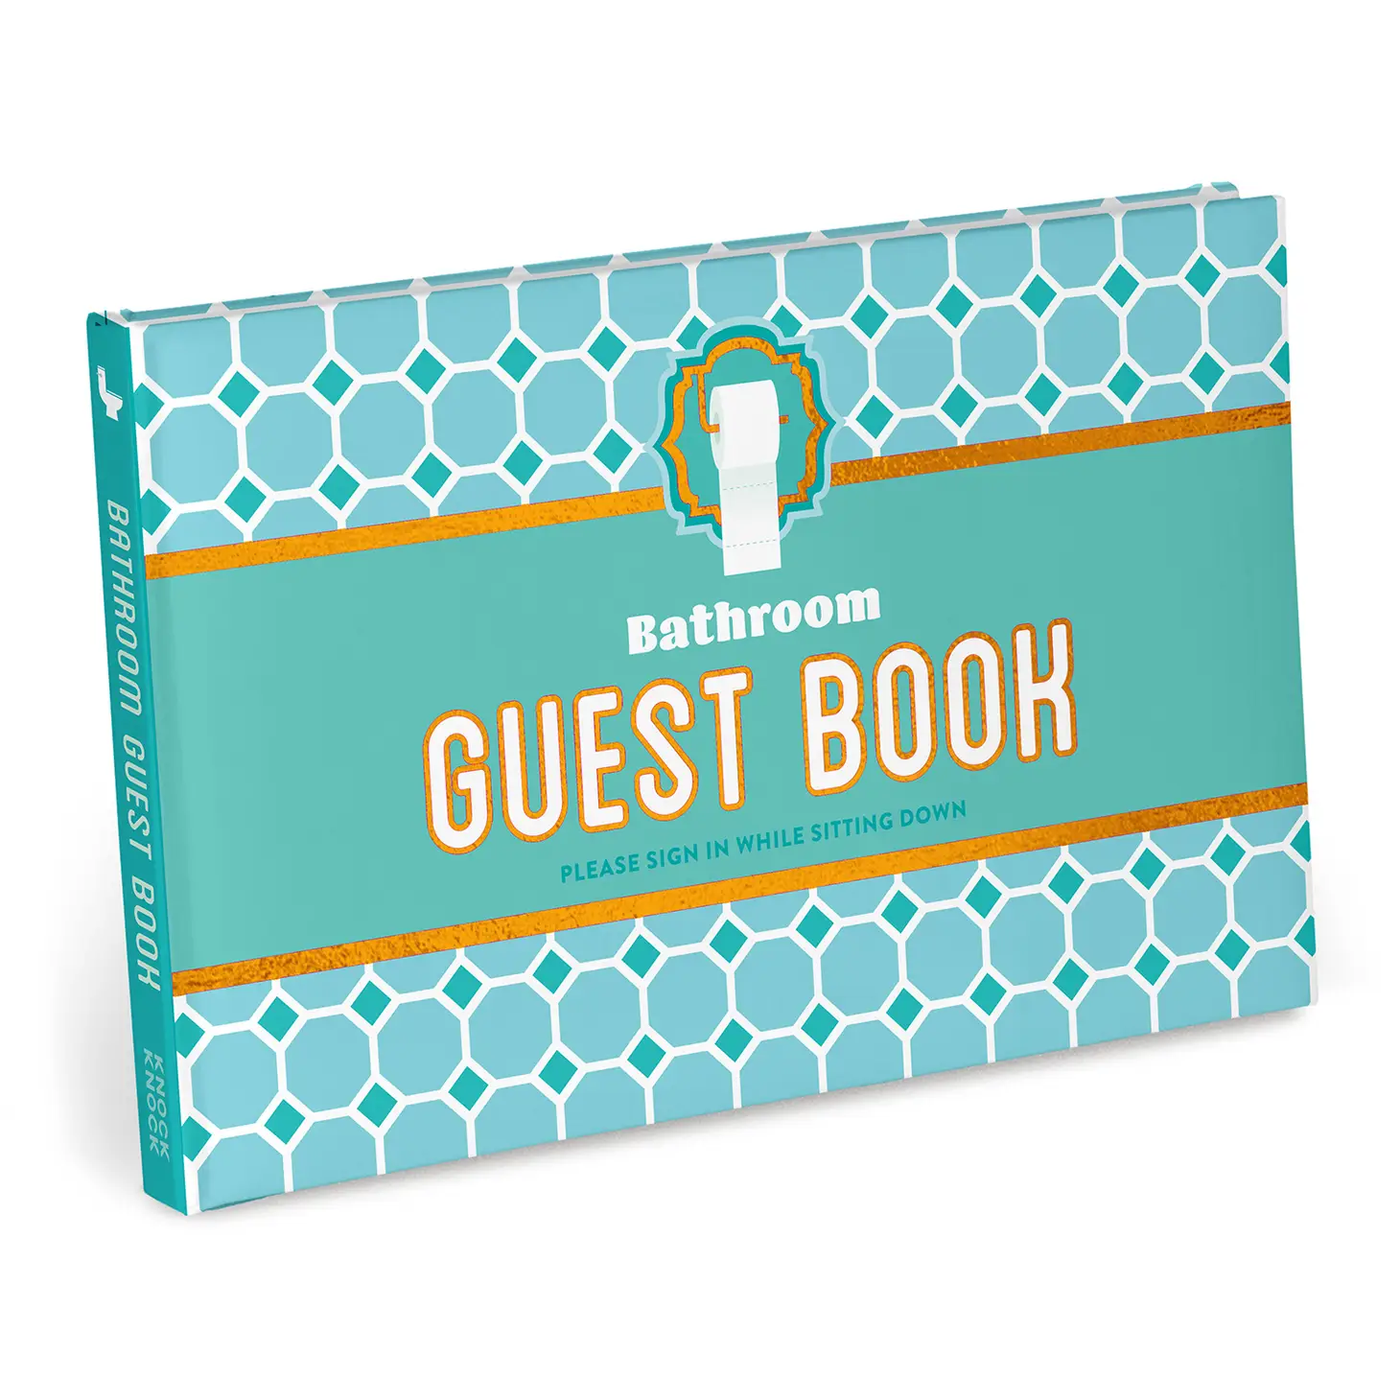 Bathroom Guest Book Vol 2